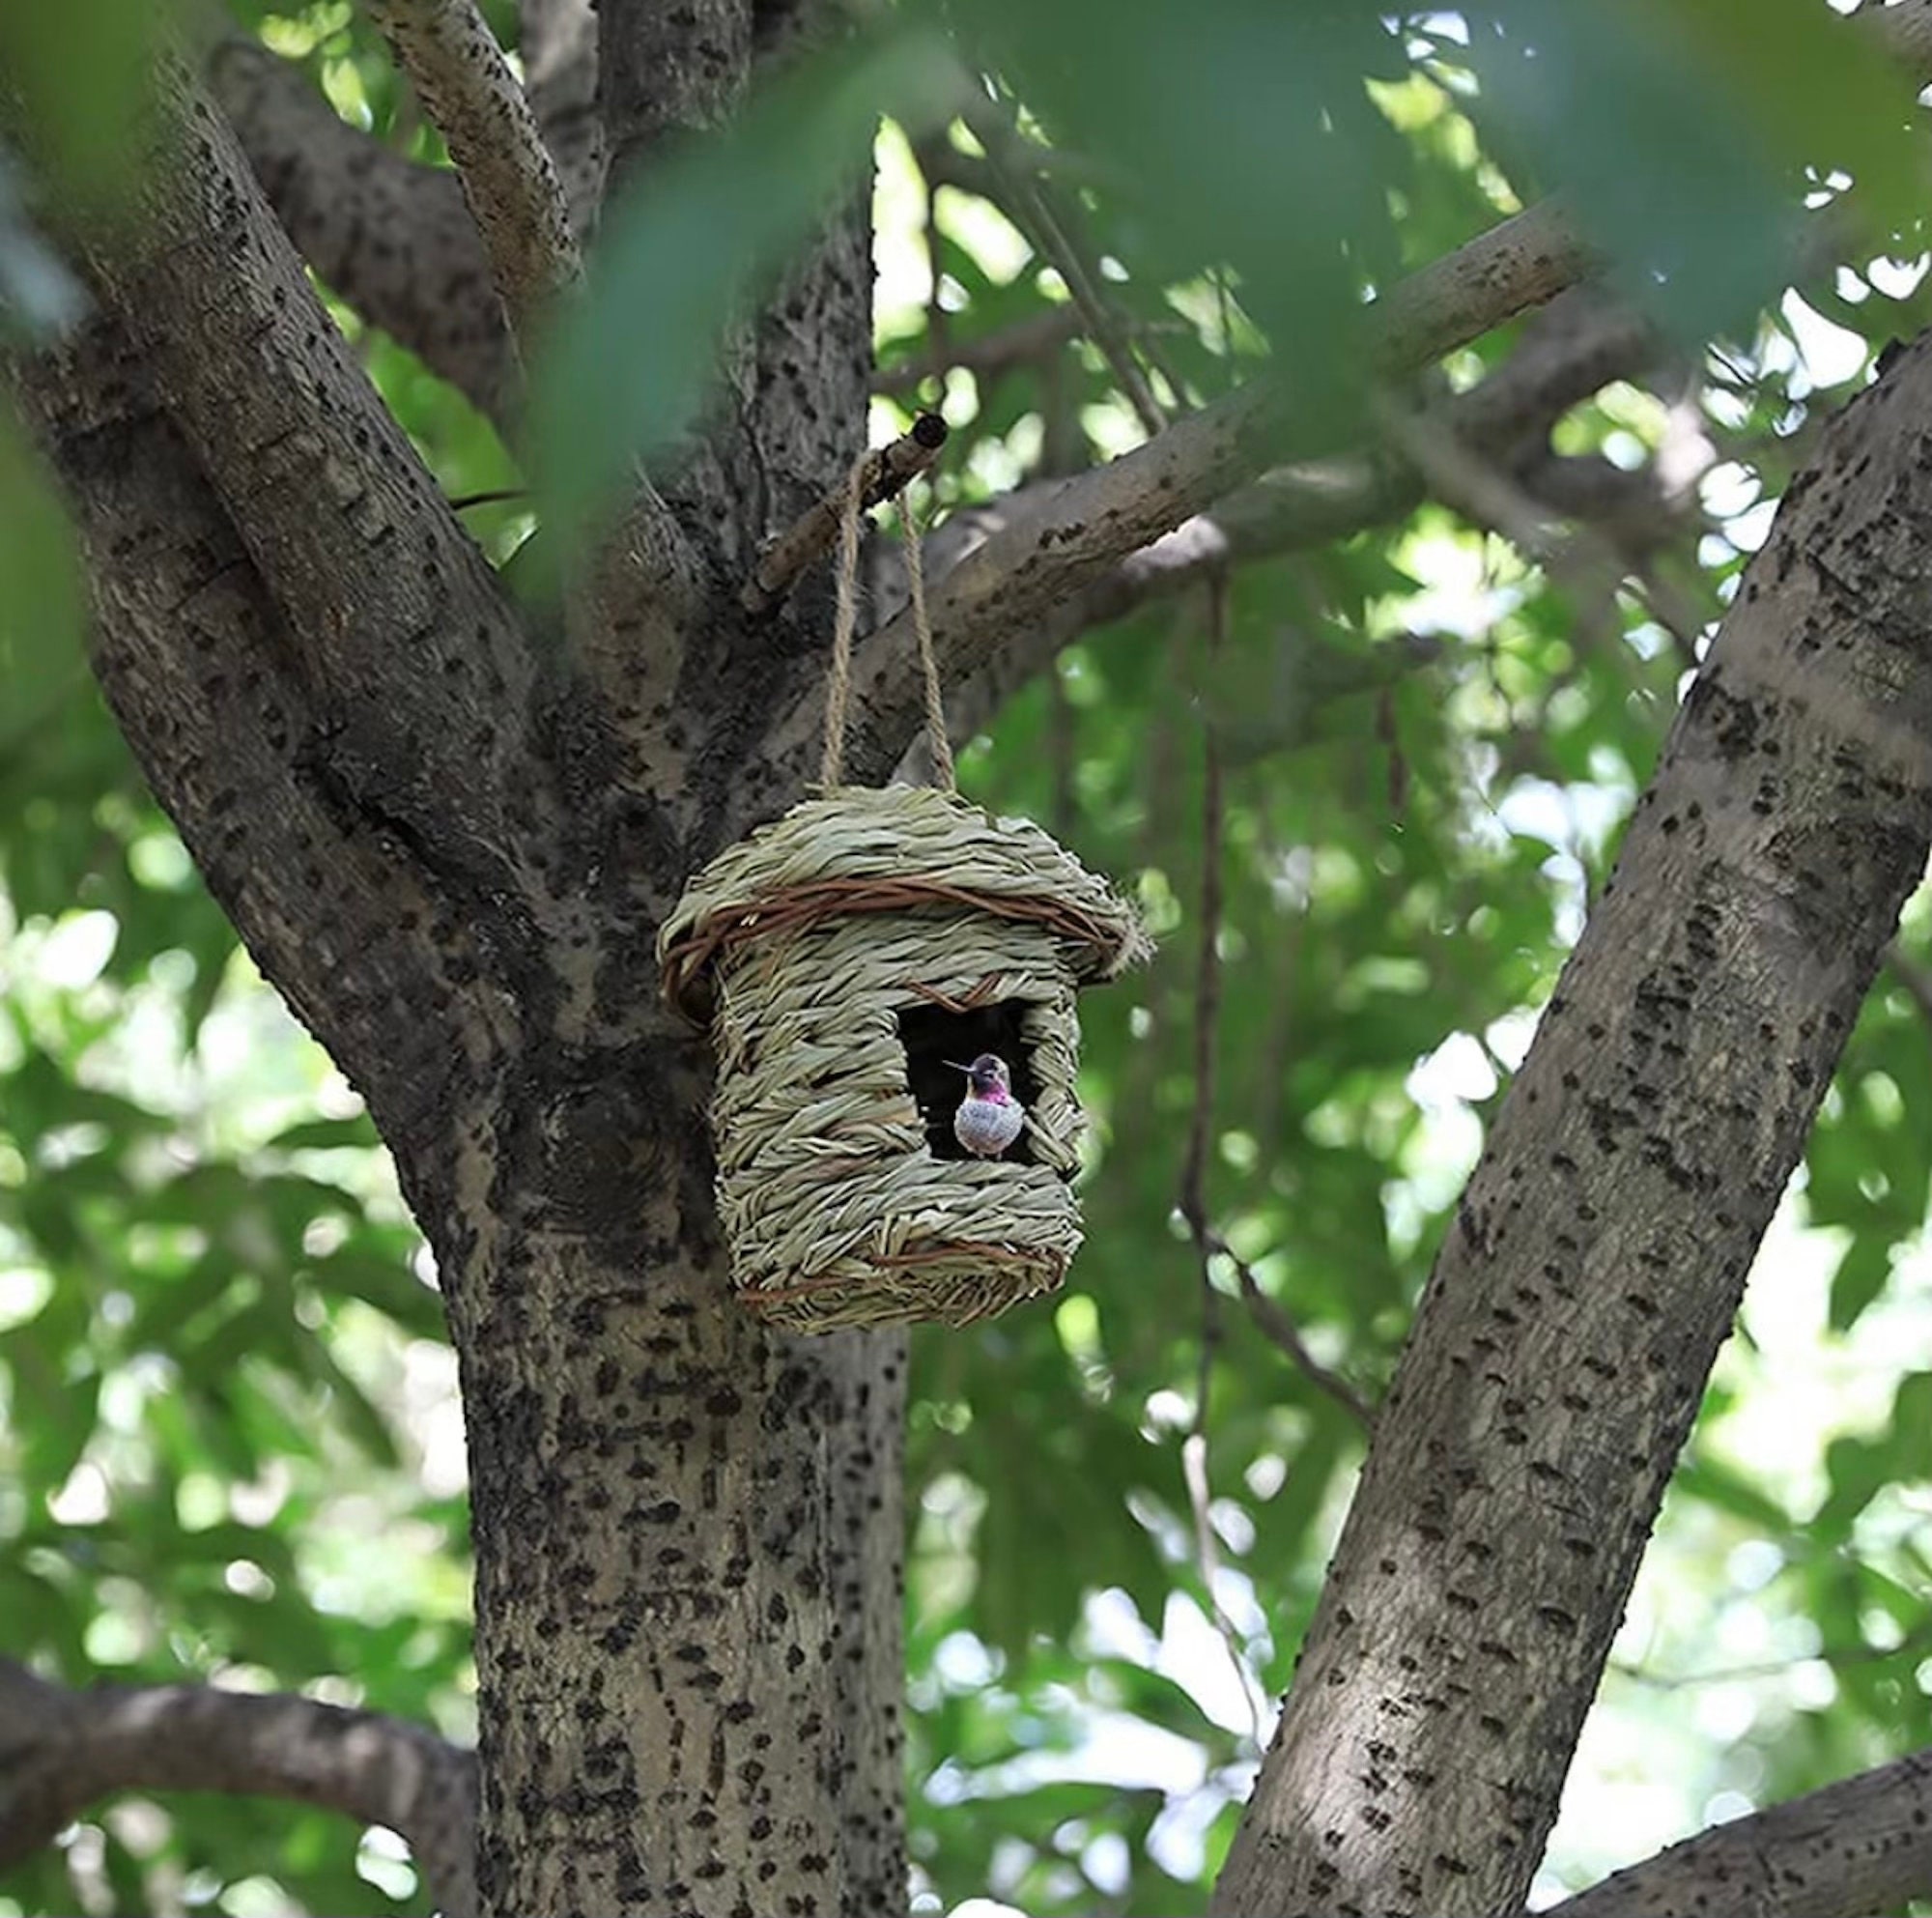 Acheter Maison à colibris avec lanière en herbe tissée à la main, lieu de  repos suspendu en plein air, cabane à oiseaux naturelle, fournitures d' extérieur